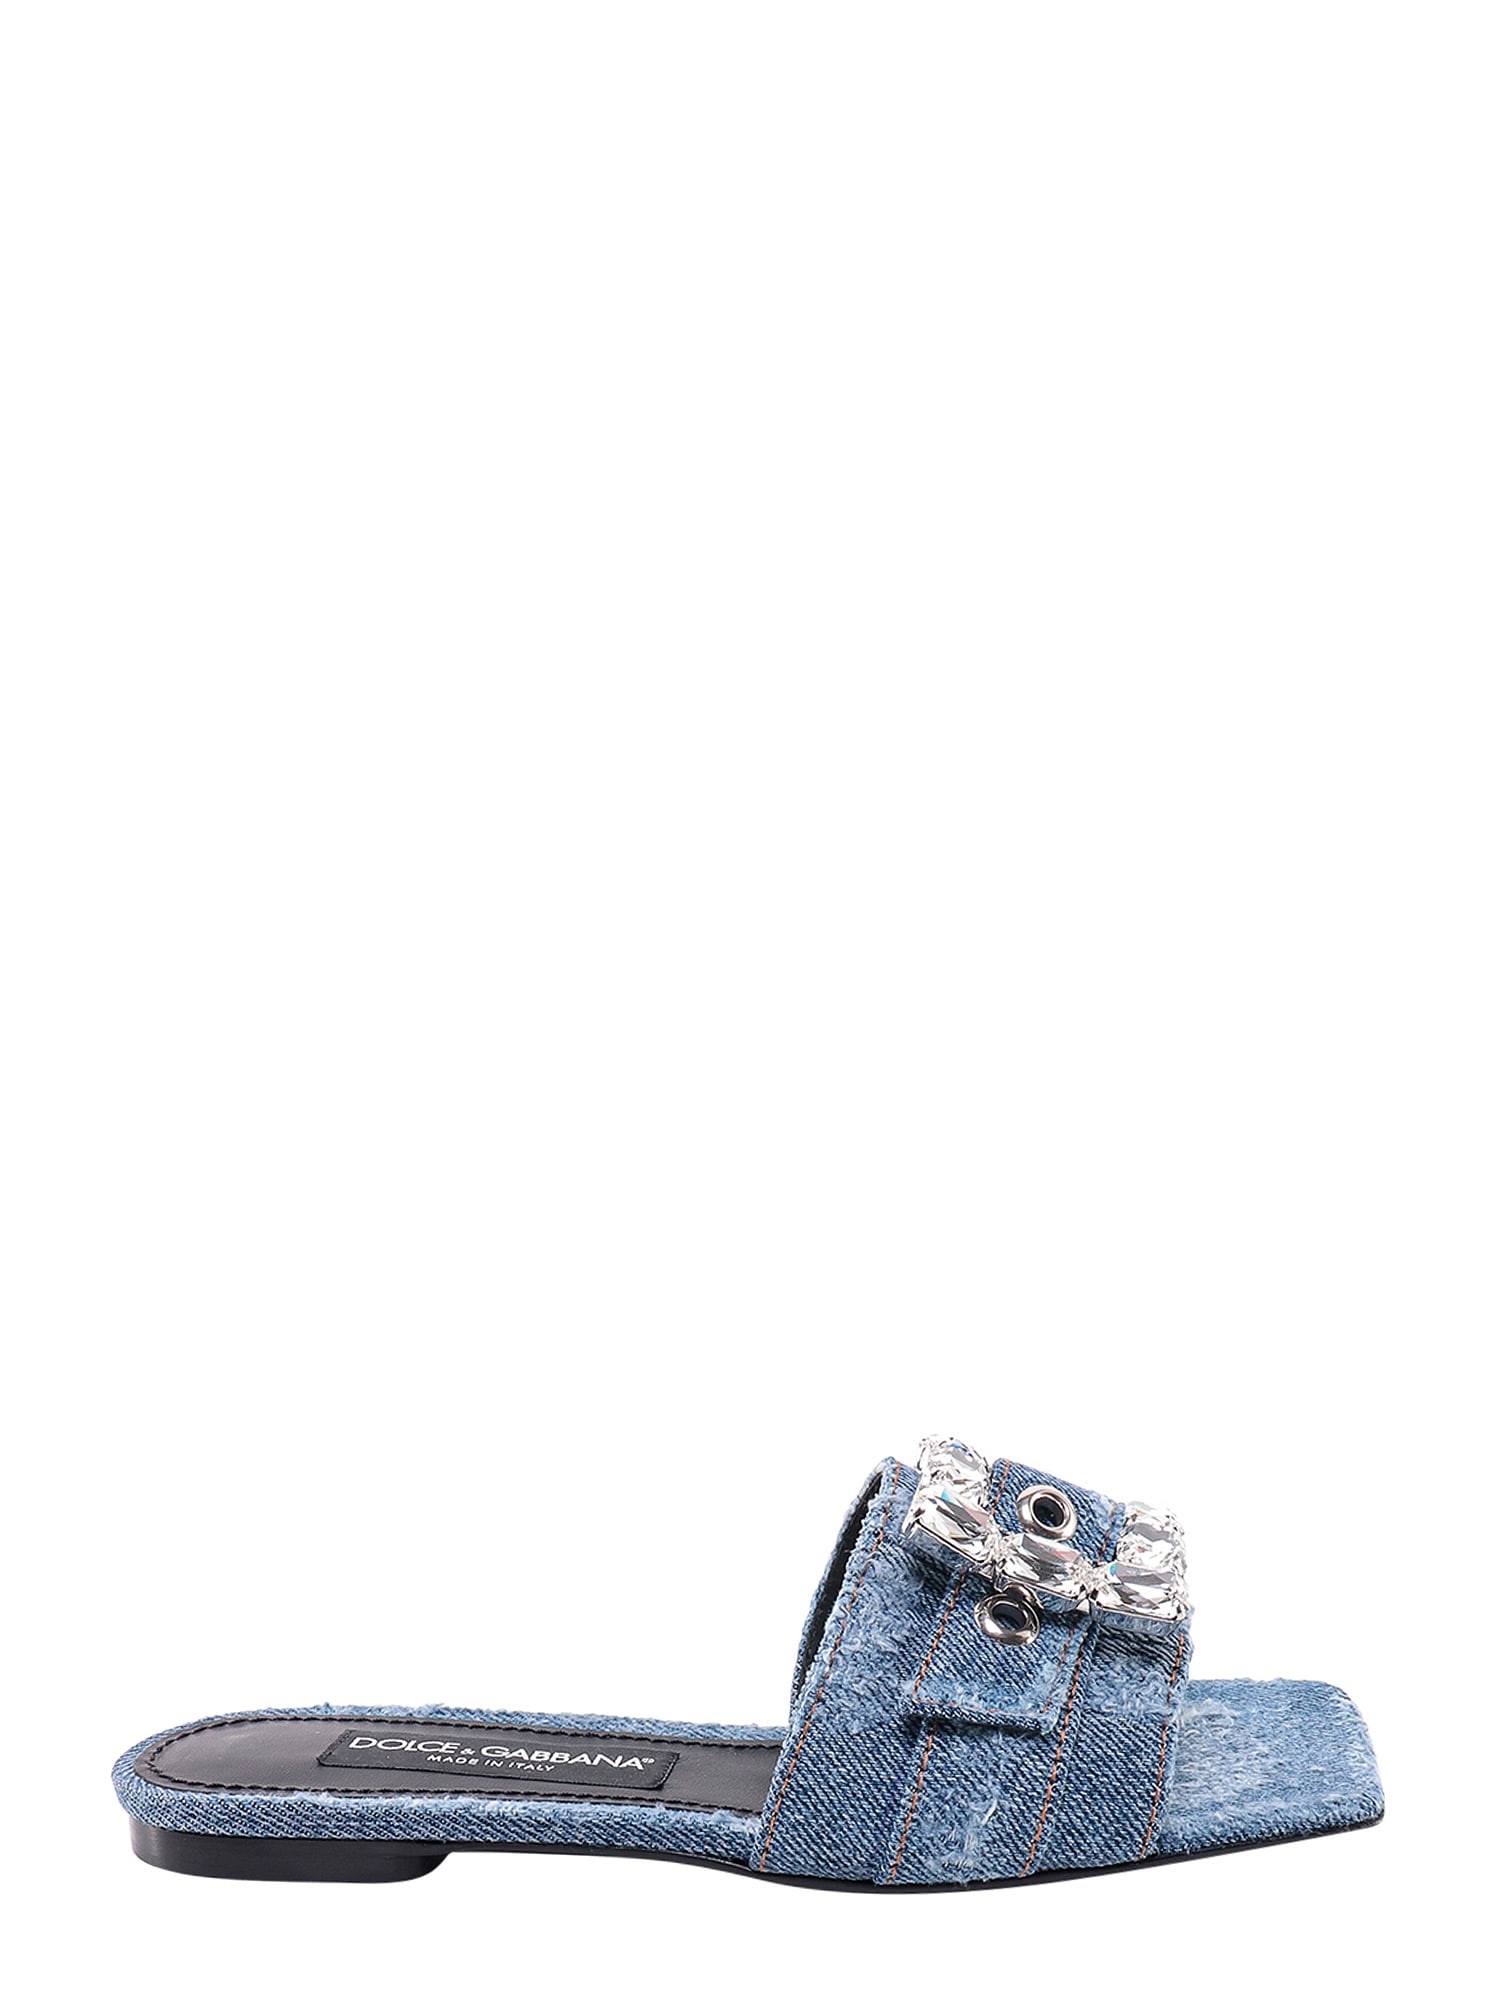 Dolce & Gabbana Sandals In Blu